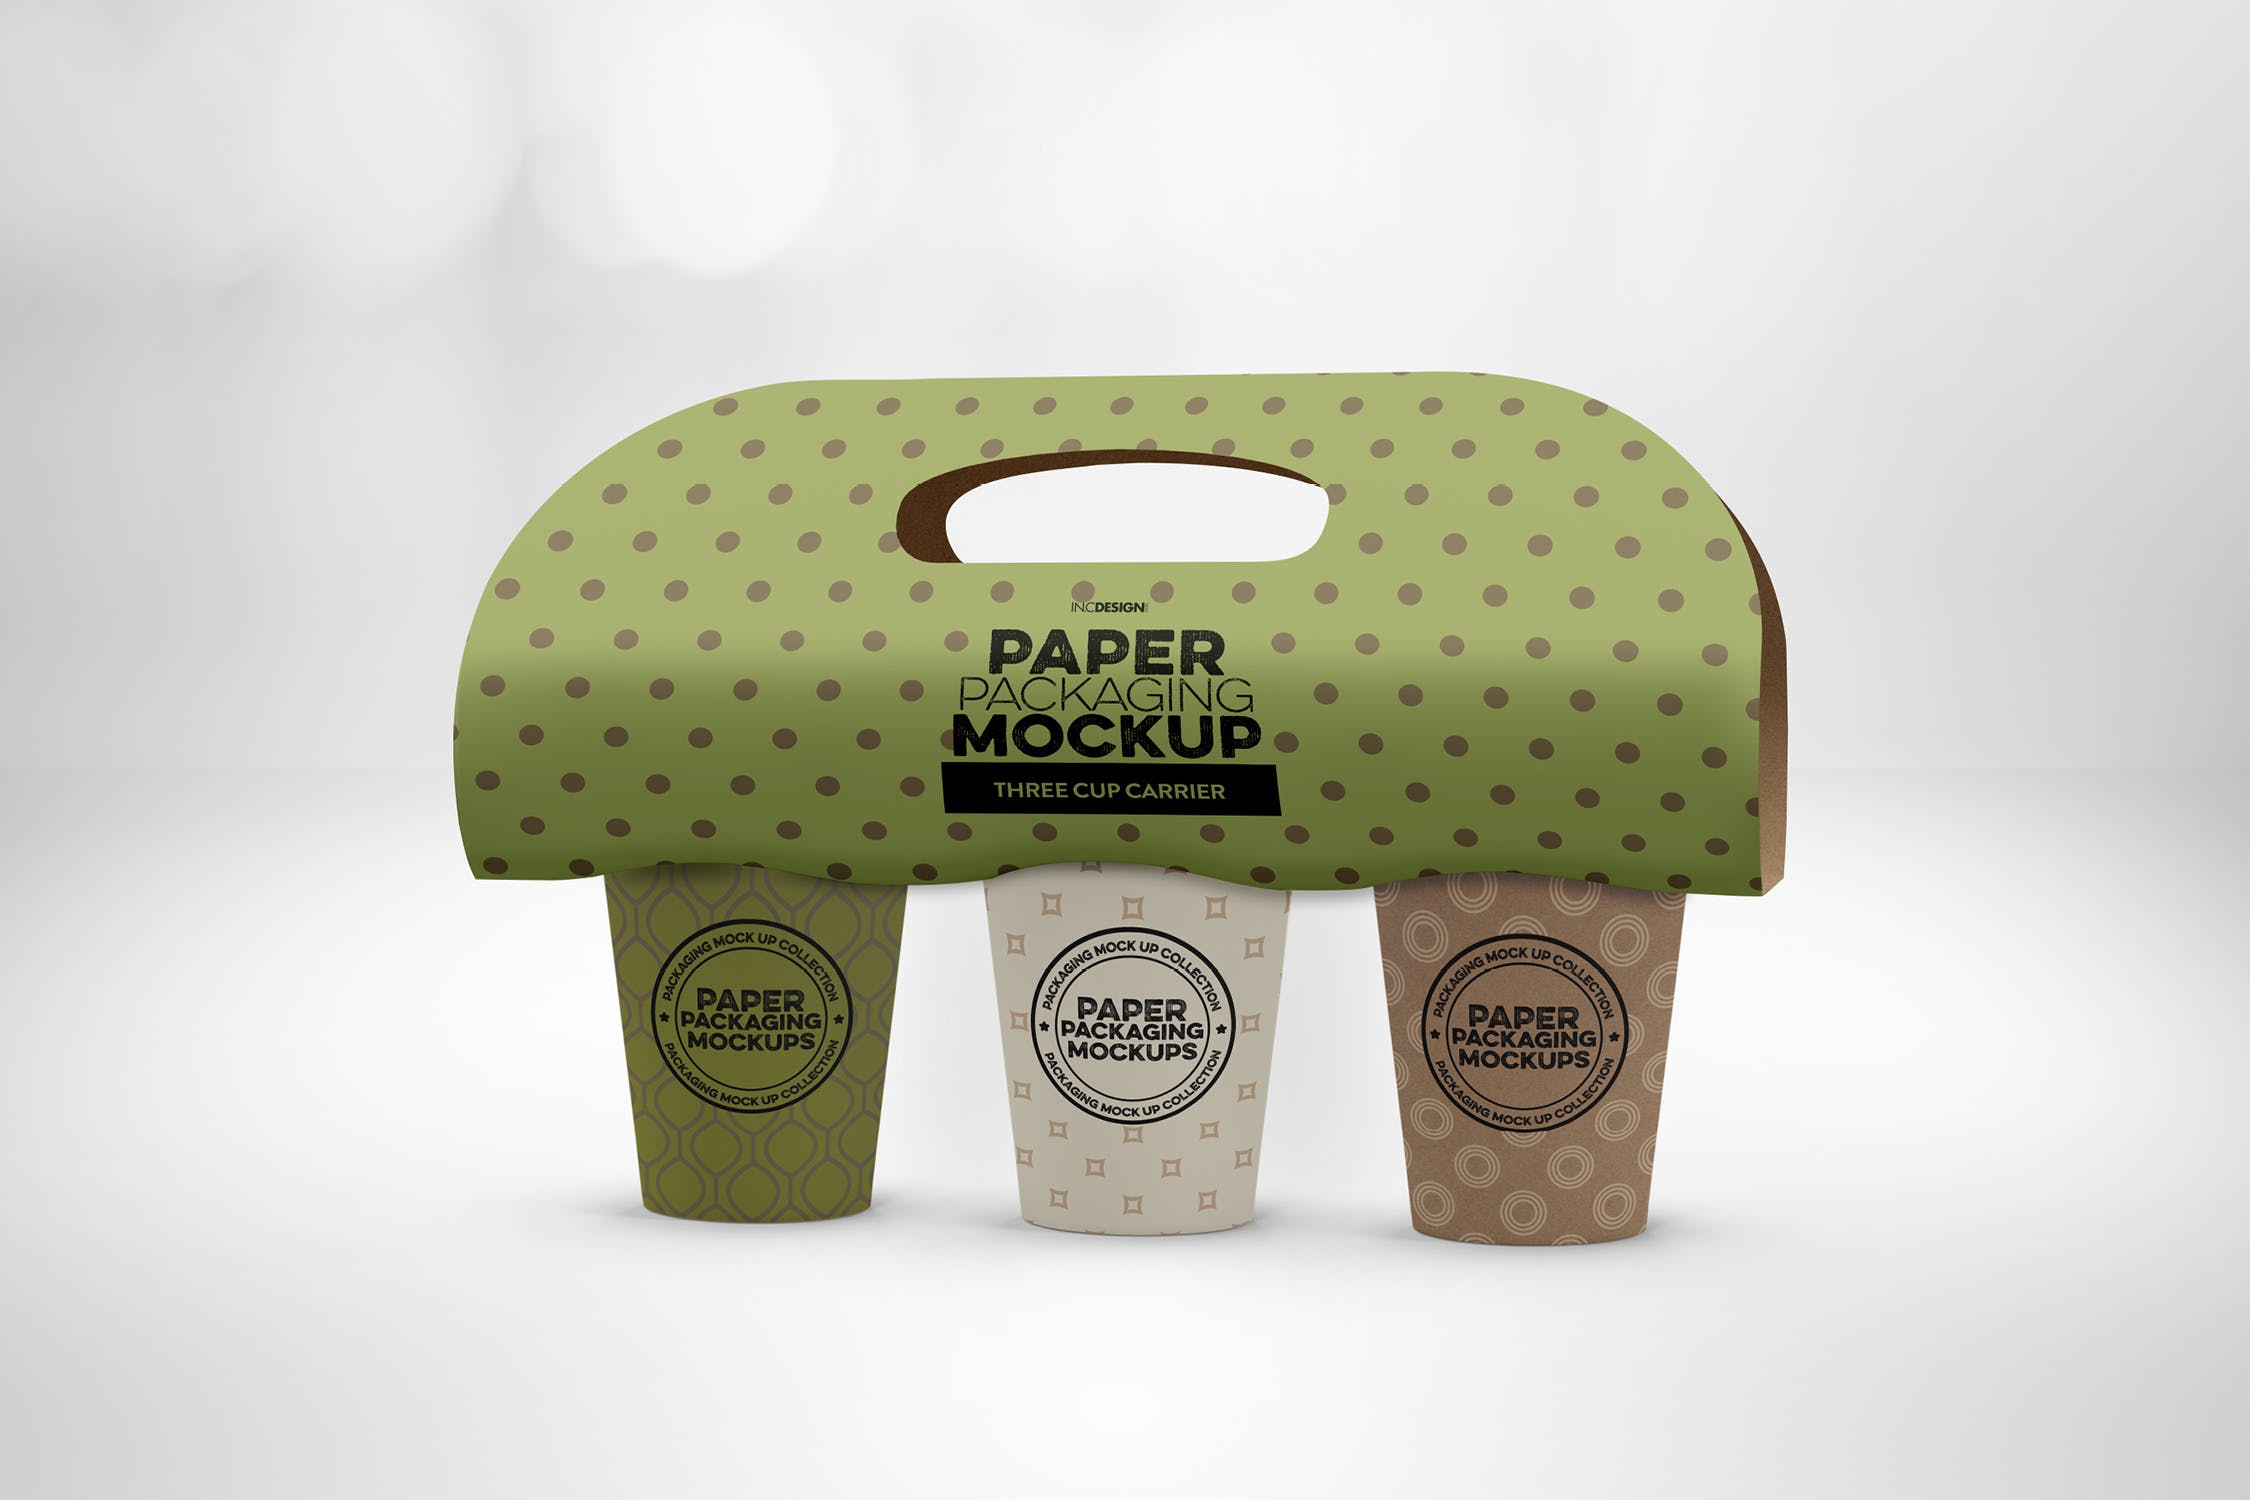 三个装纸杯饮料外带包装设计样机模板 Three Cup Paper Carrier Packaging Mockup插图(2)